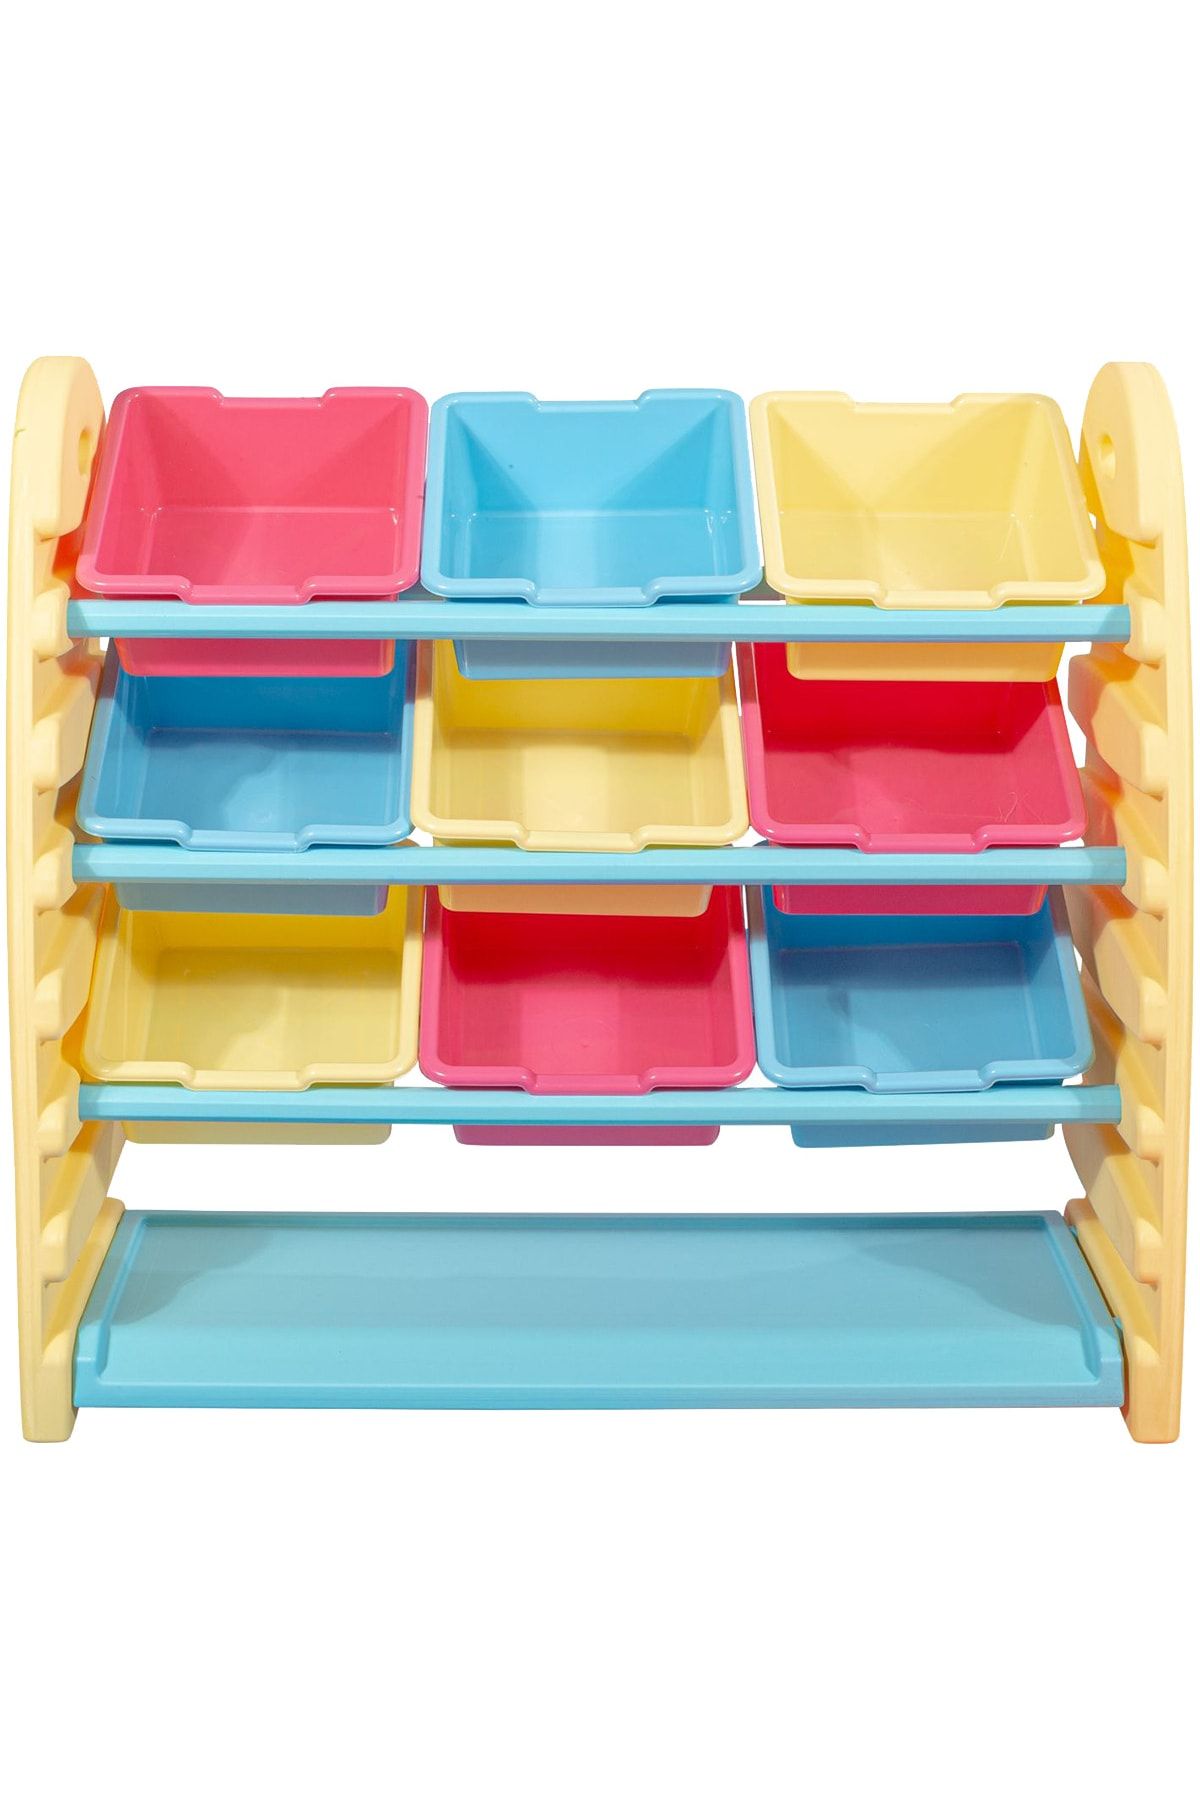 TOYSTAR Çocuk Oyuncak Saklama Kutuları - Renkli Kutular - Raf - Çocuk Odası Oyuncak Kutuları